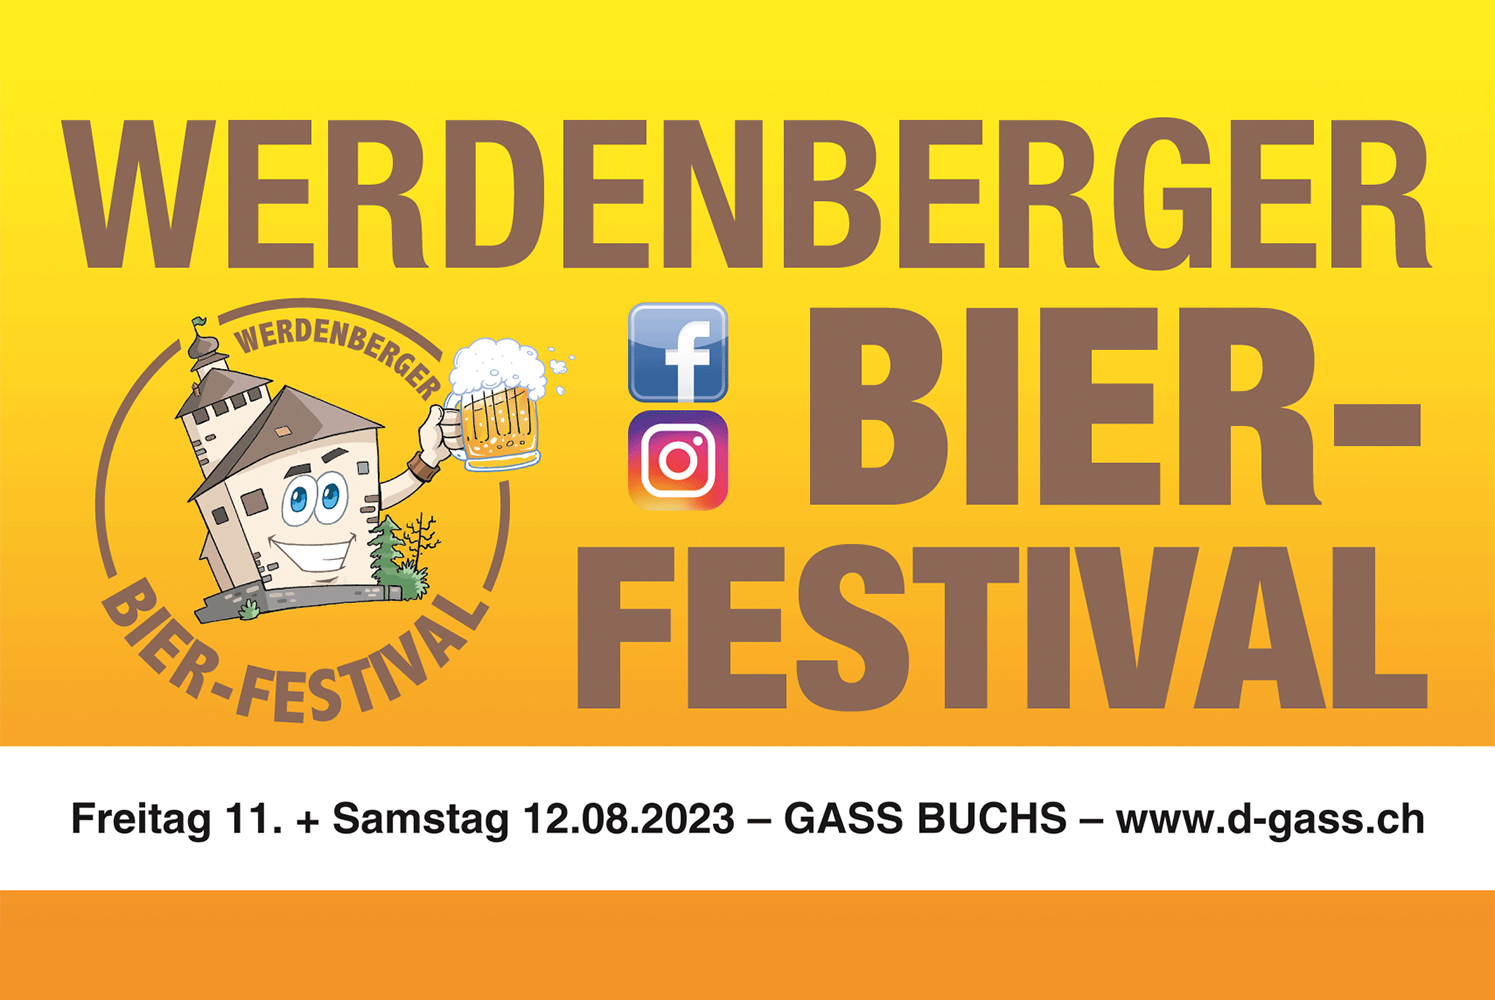 Werdenberger Bierfestival 2023 - Werdenberger Bierfestival 2023